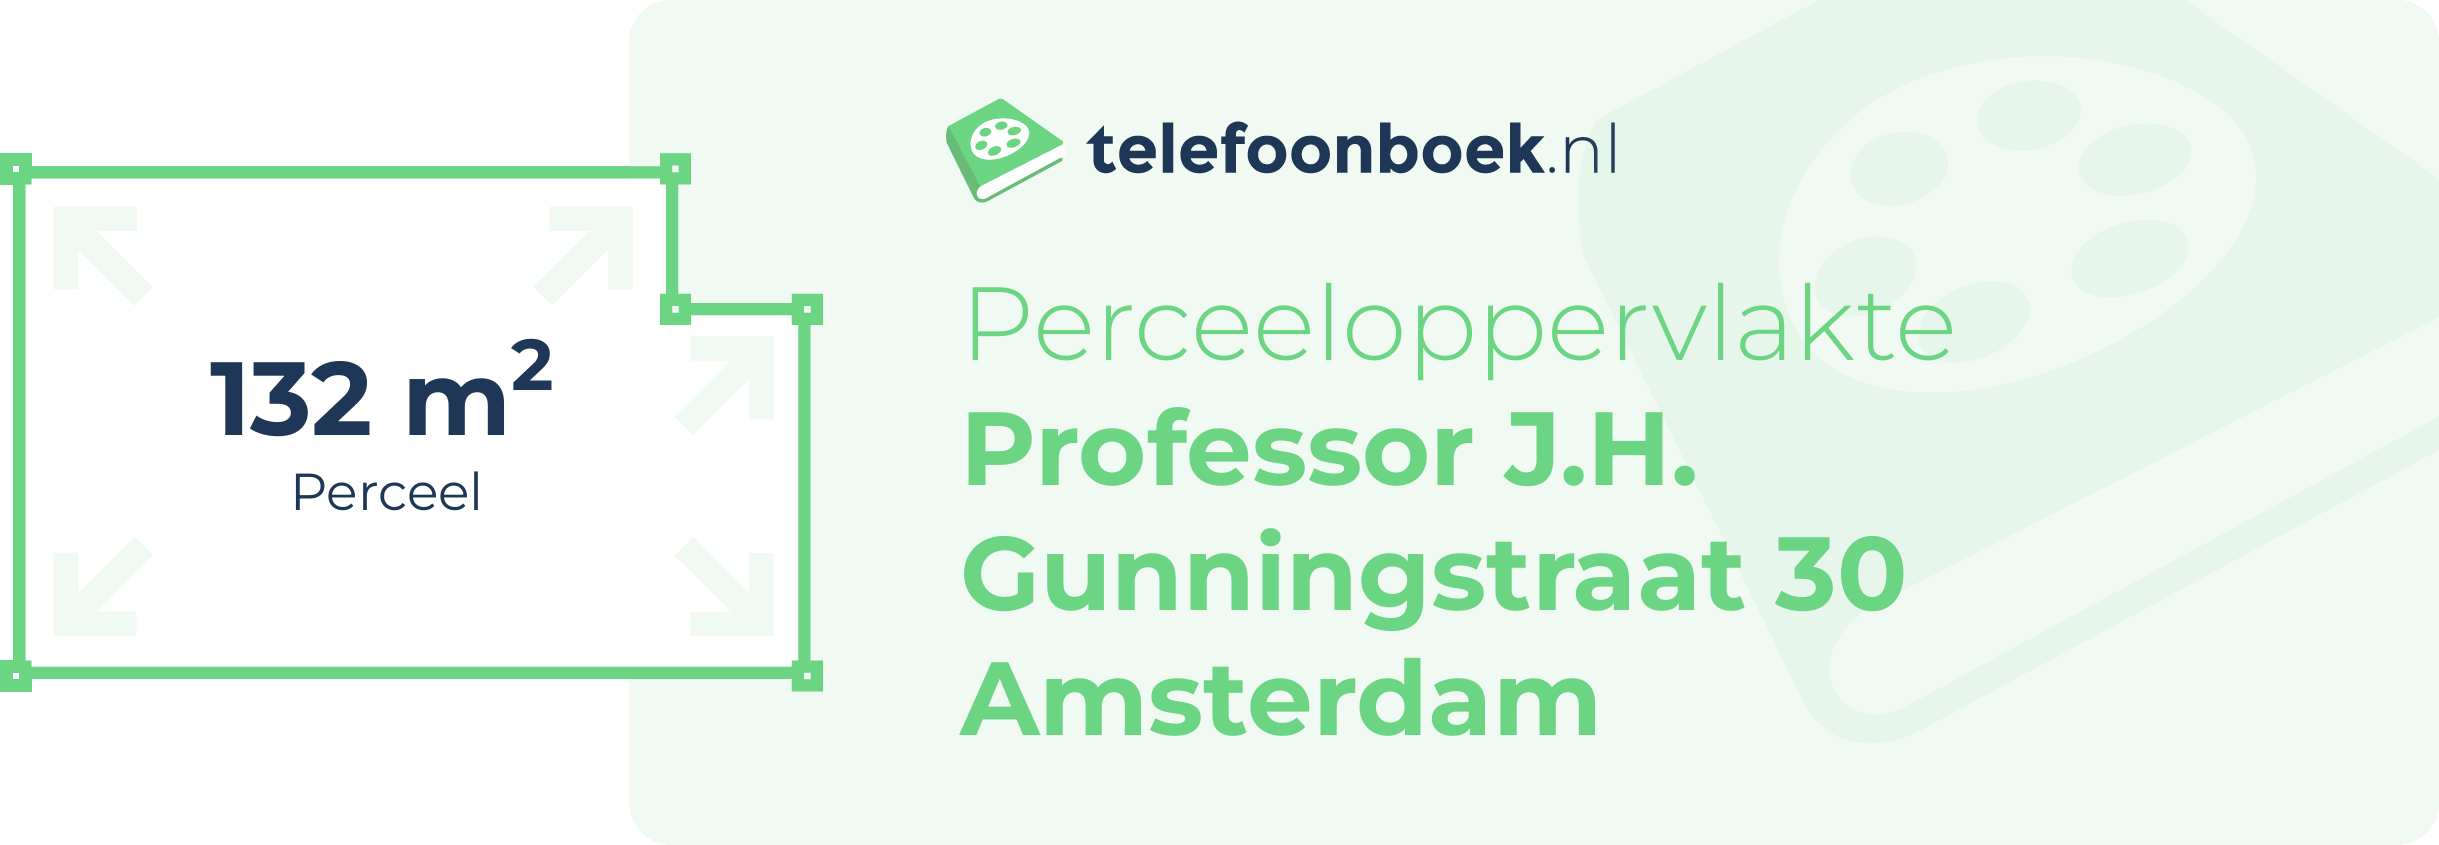 Perceeloppervlakte Professor J.H. Gunningstraat 30 Amsterdam